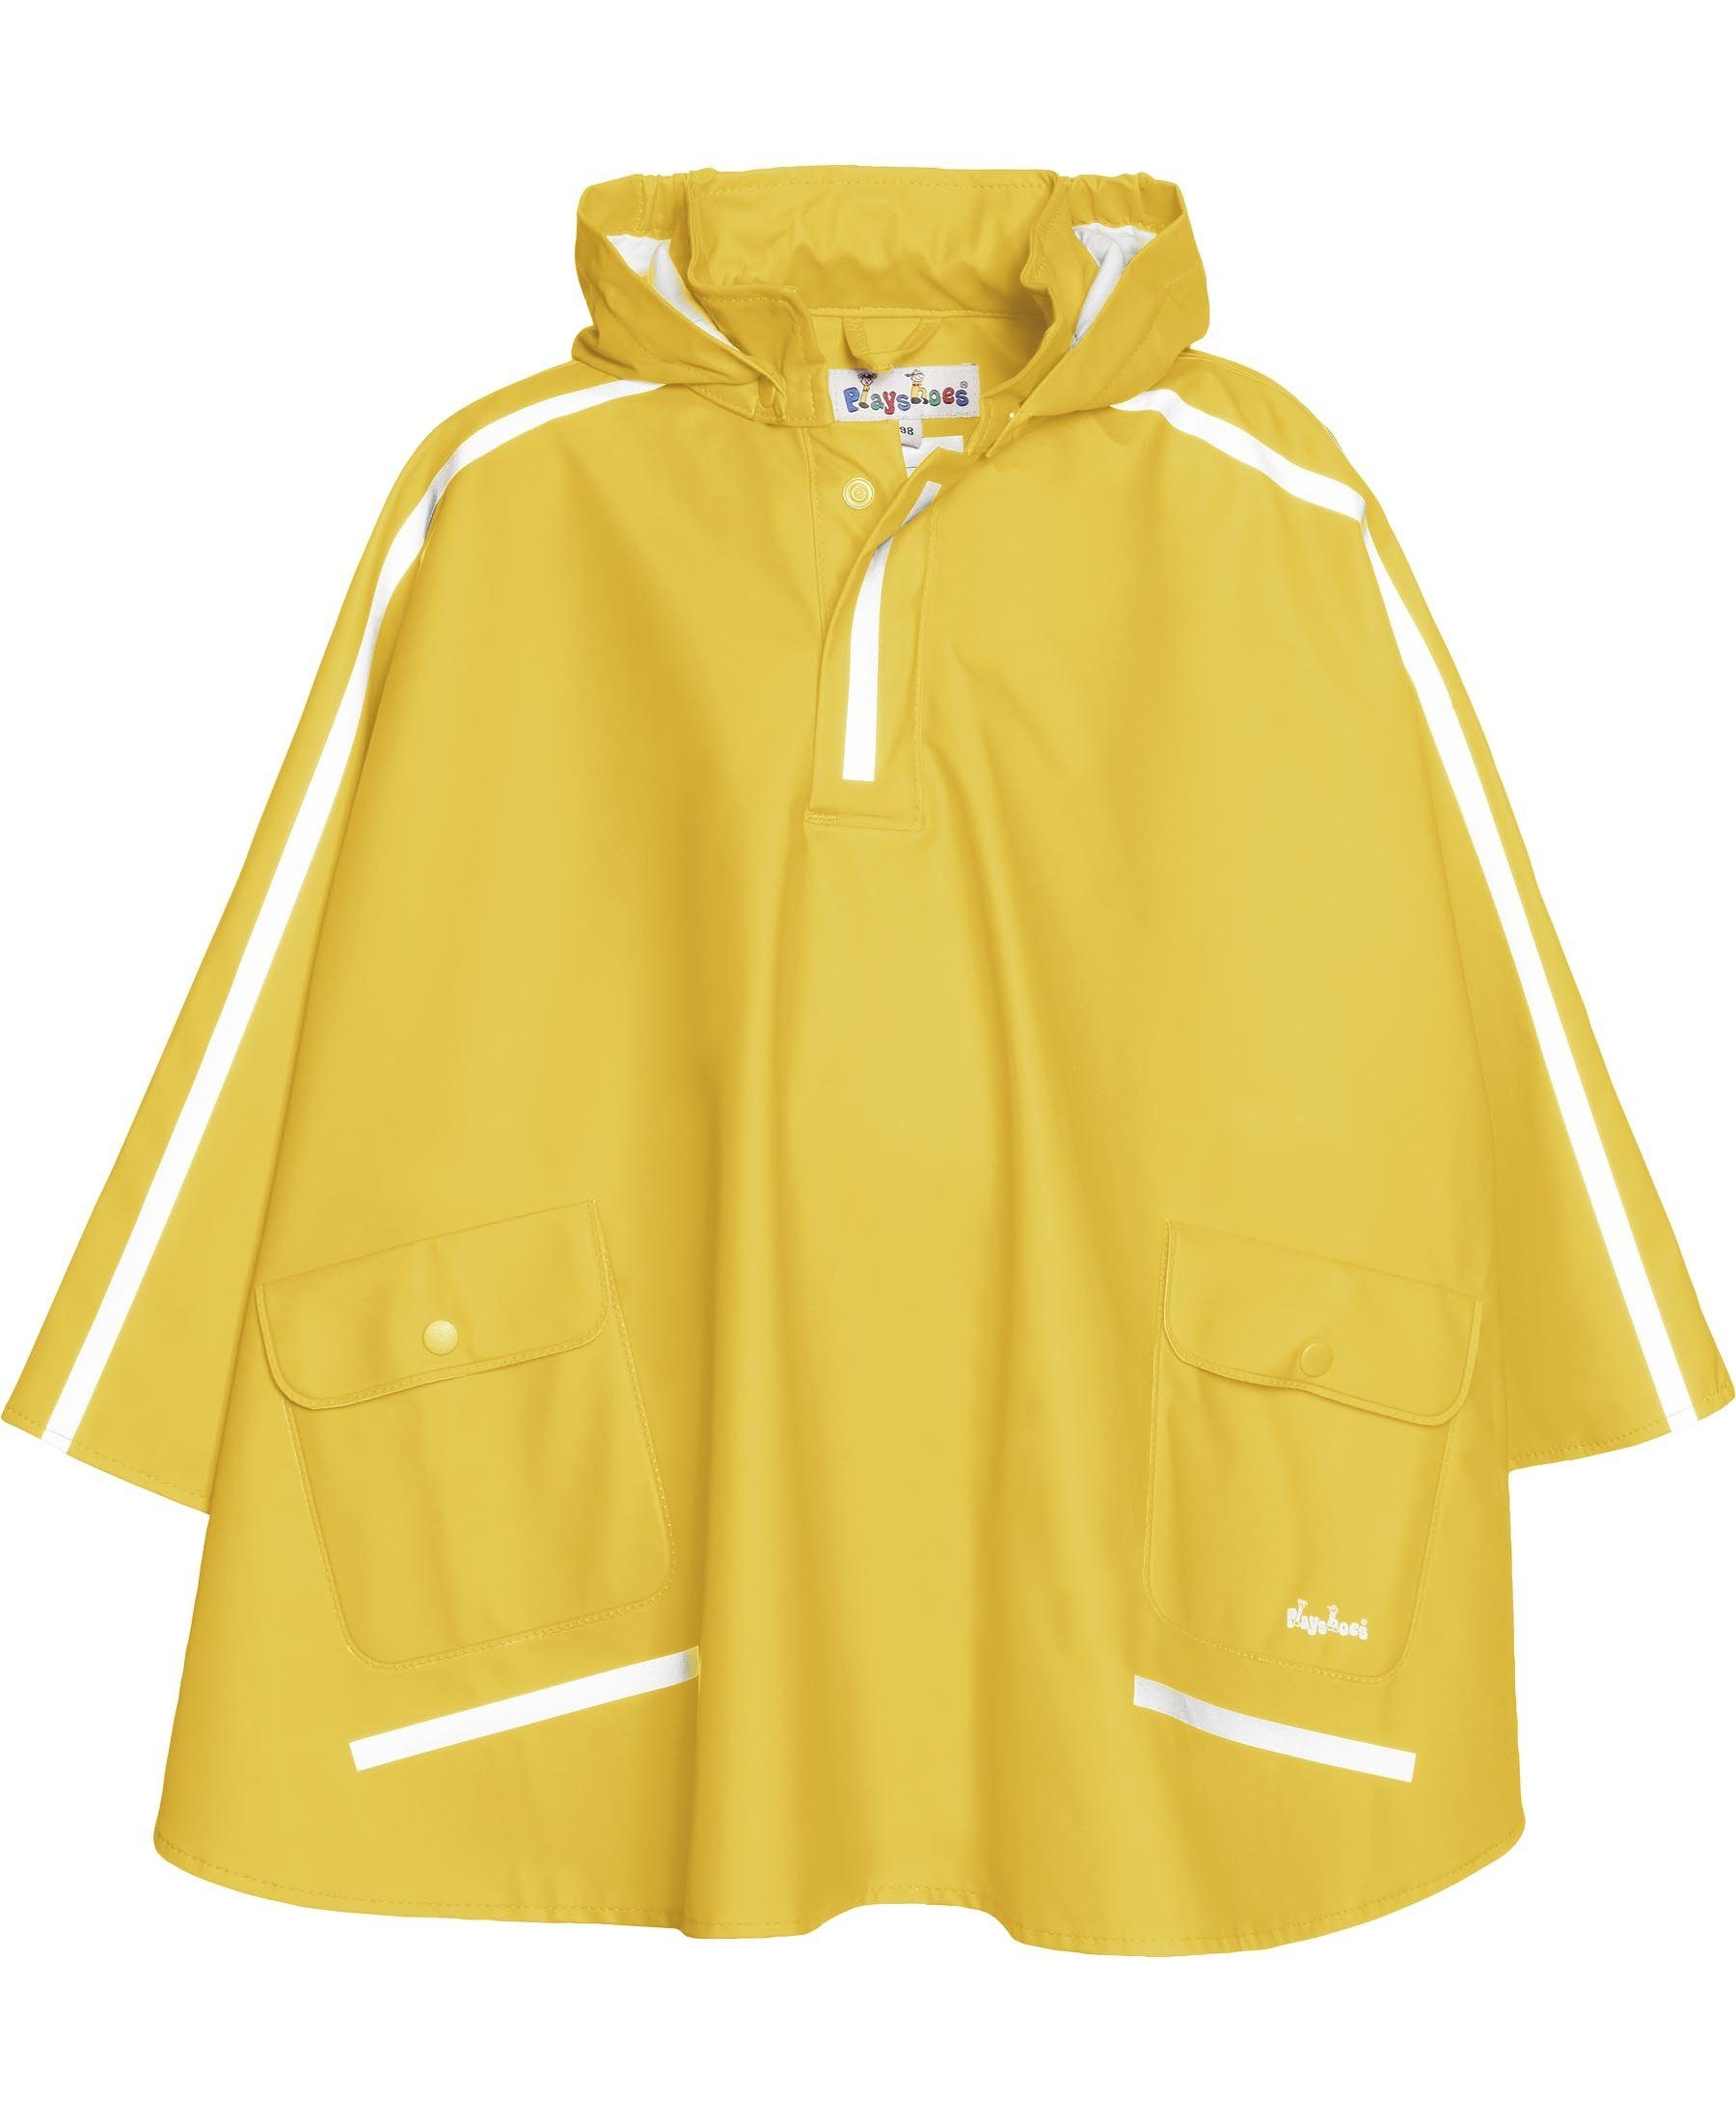 Beliebte Marke Playshoes Regenponcho Regen-Cape langer Gelb Rücken